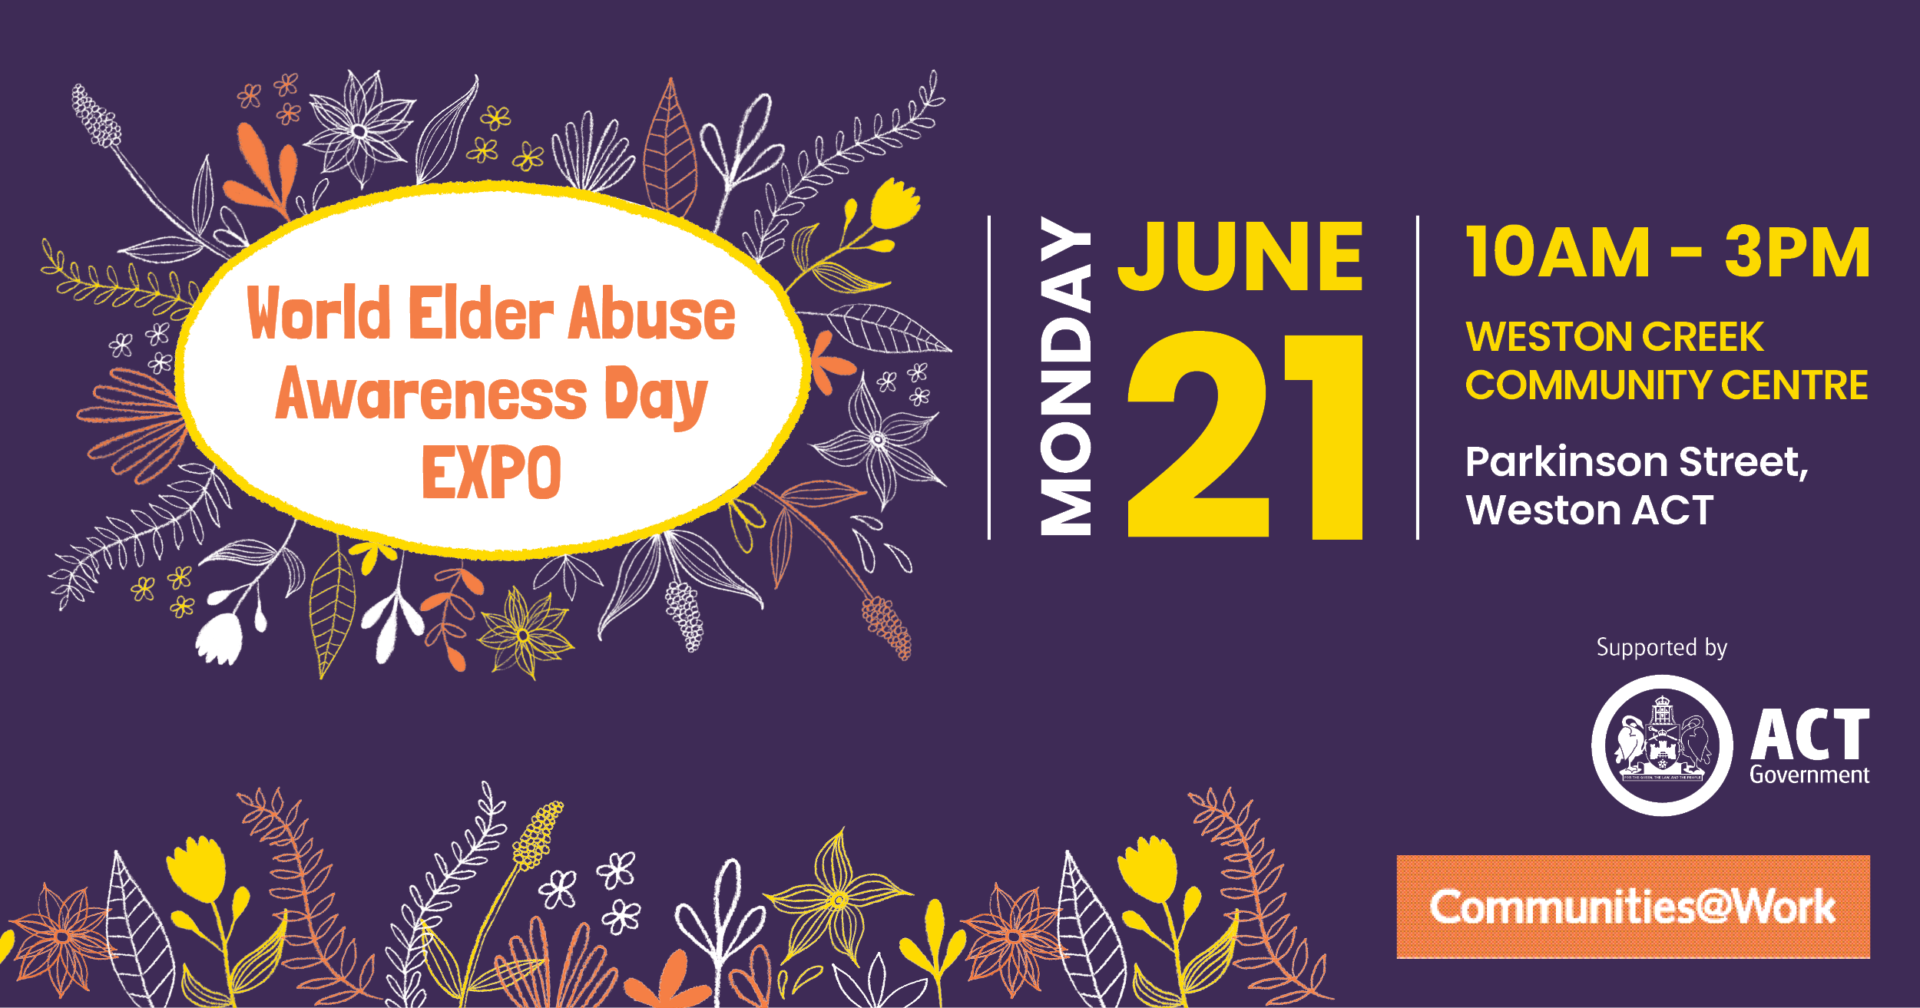 World Elder Abuse Awareness Day Expo 